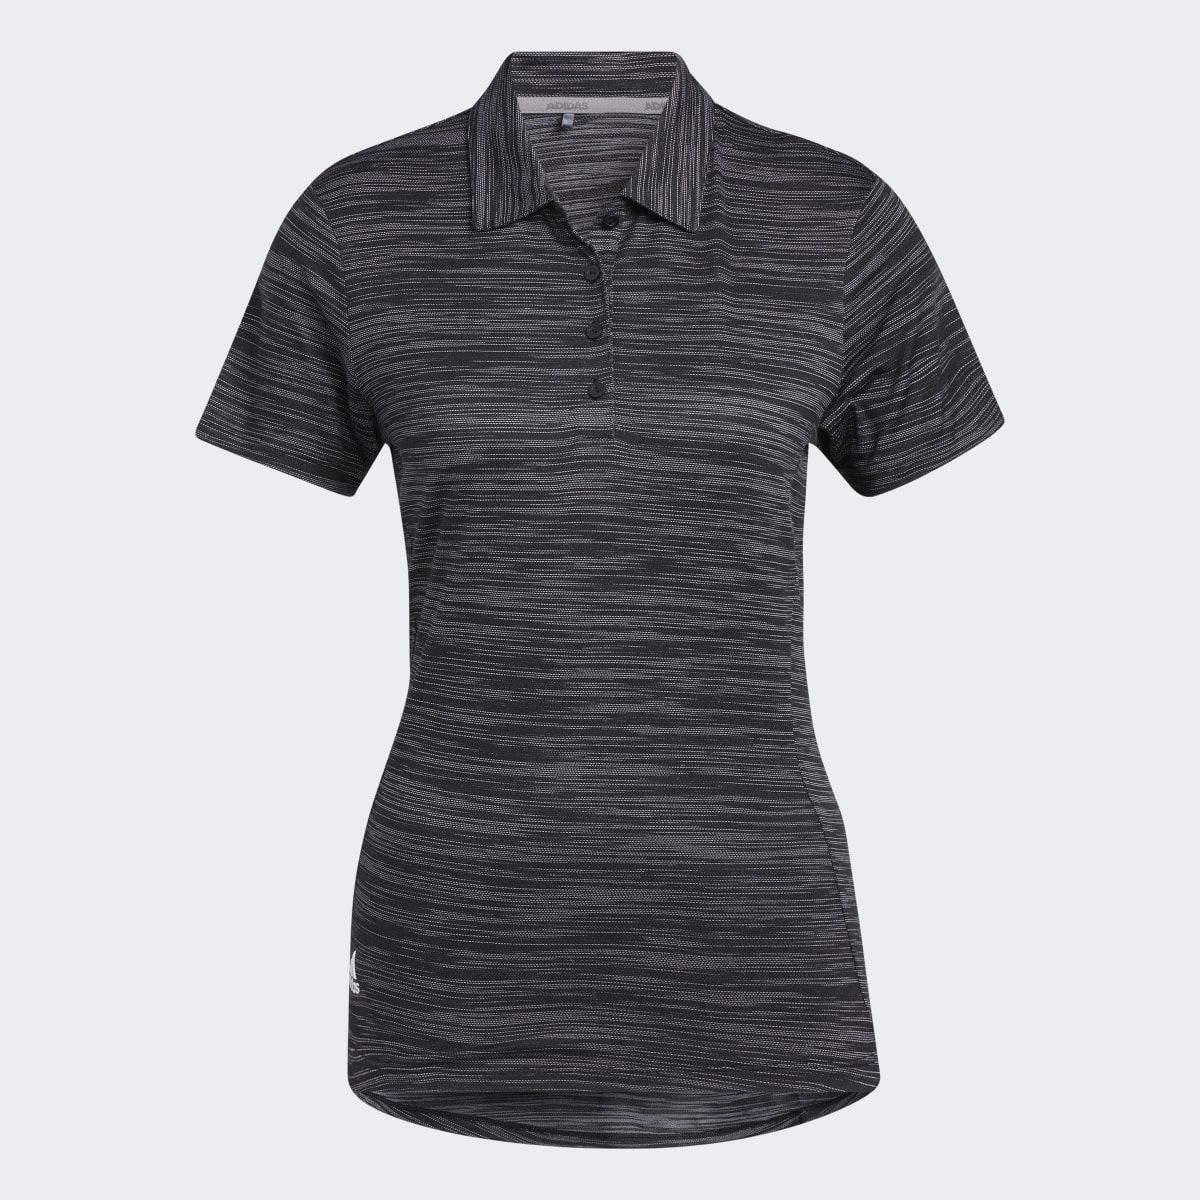 Adidas Space-Dyed Kısa Kollu Polo Tişört. 5